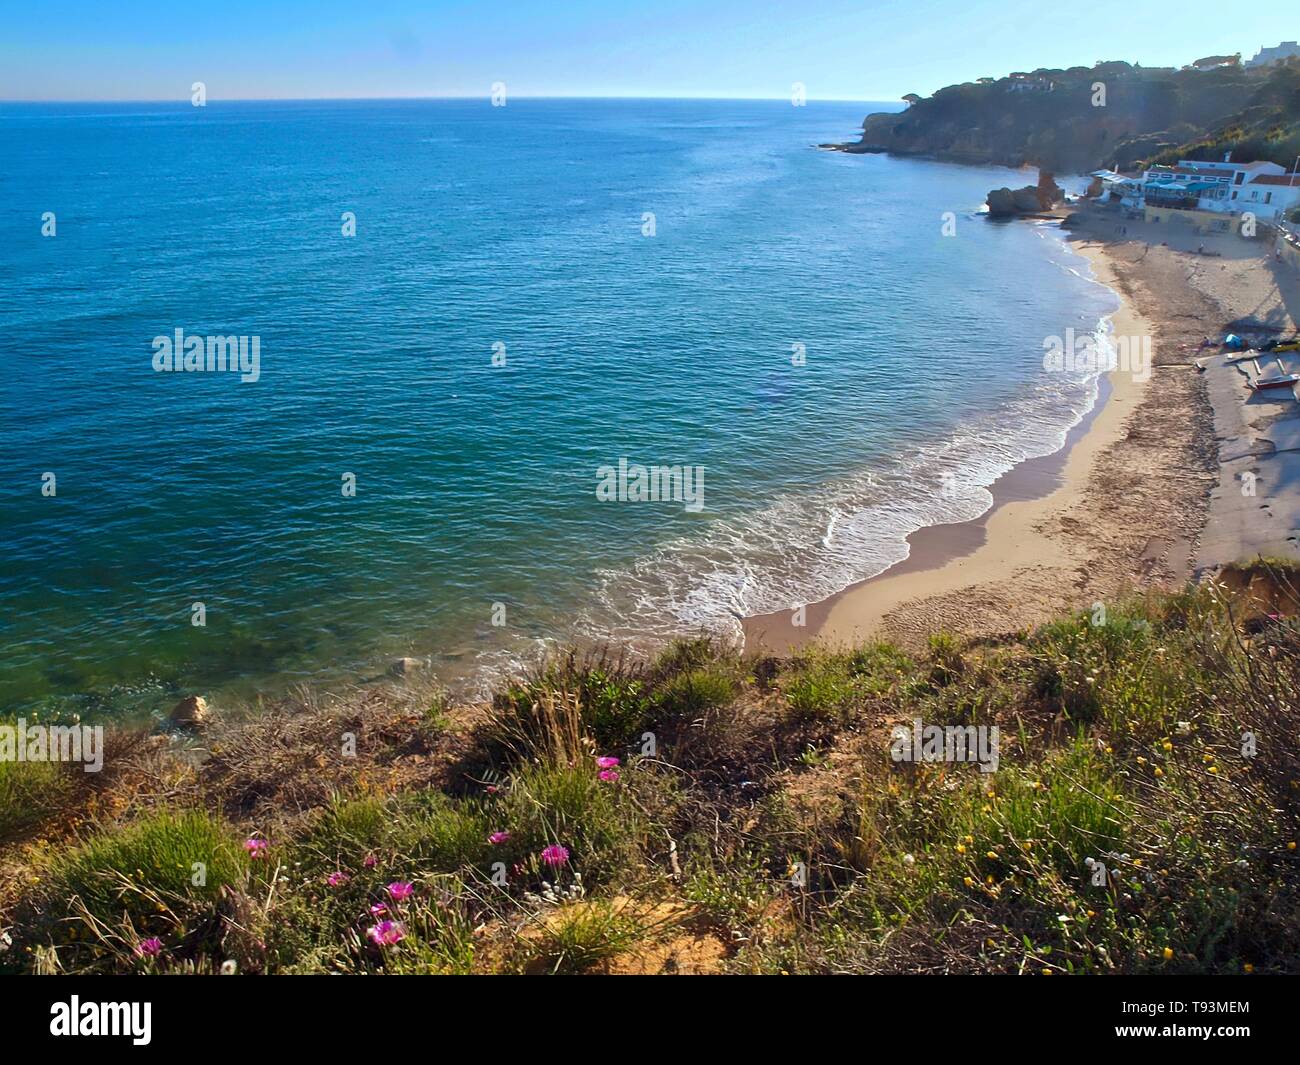 Beautiful seascape in Olhos de Agua near Albufeira at the Algarve coast of Portugal Stock Photo